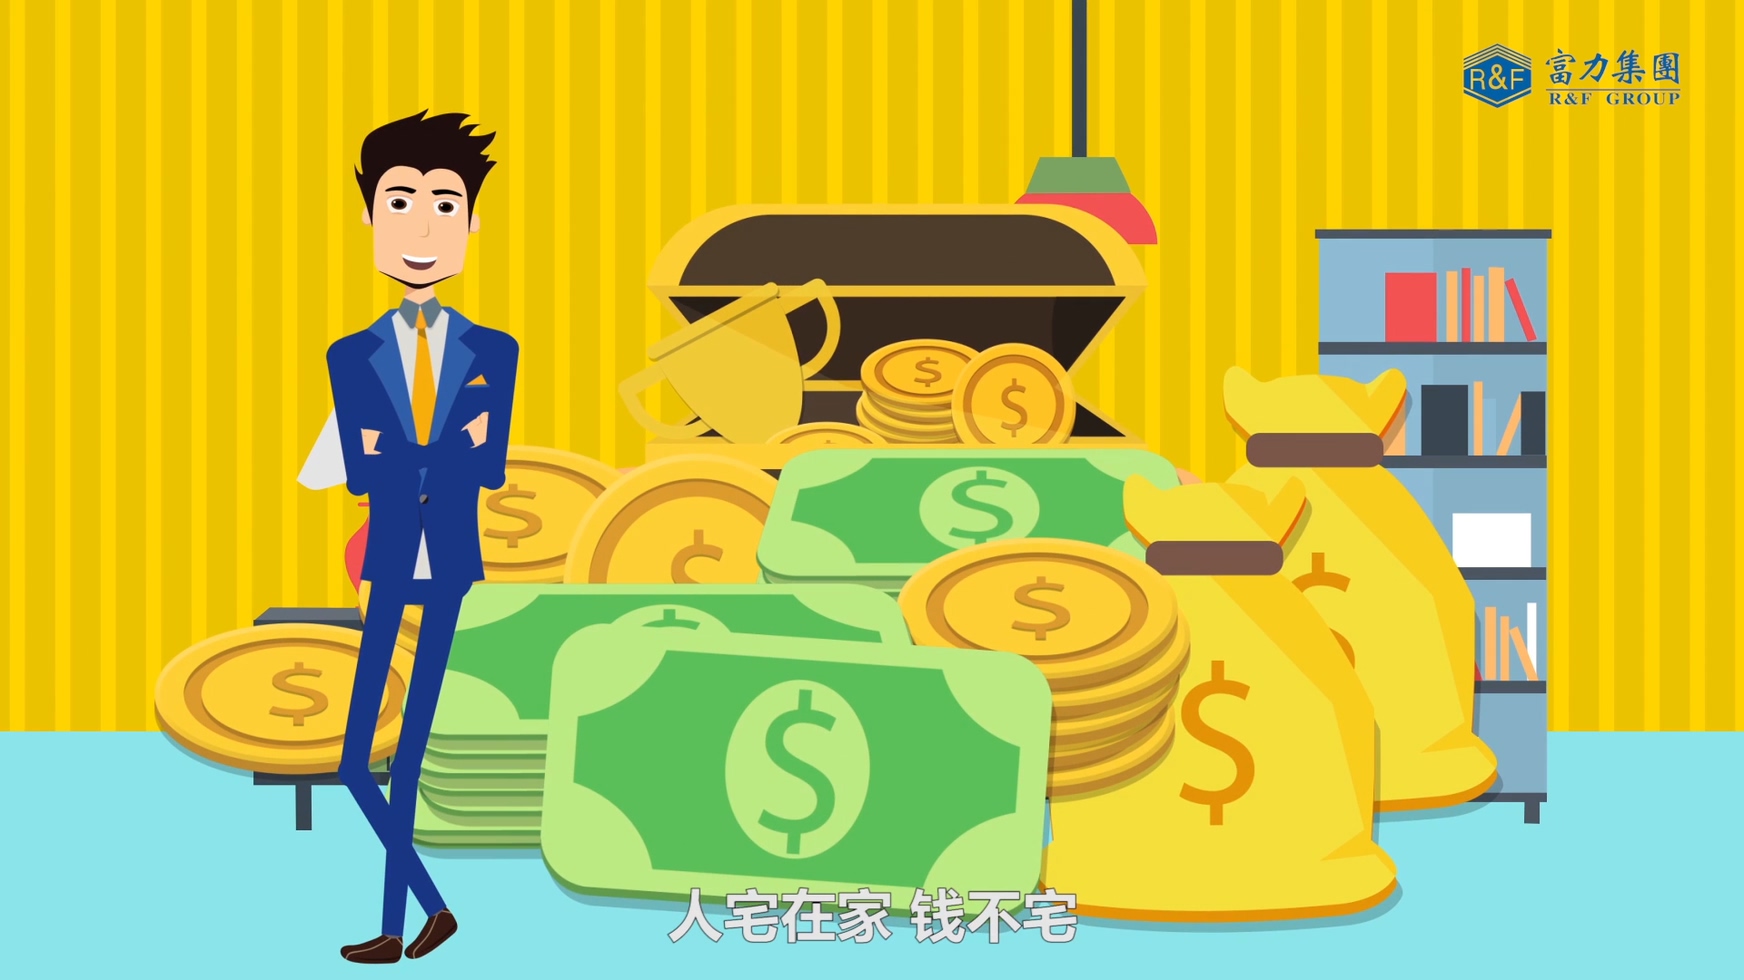 金融产品宣传片使用动画形式制作有哪些优势?